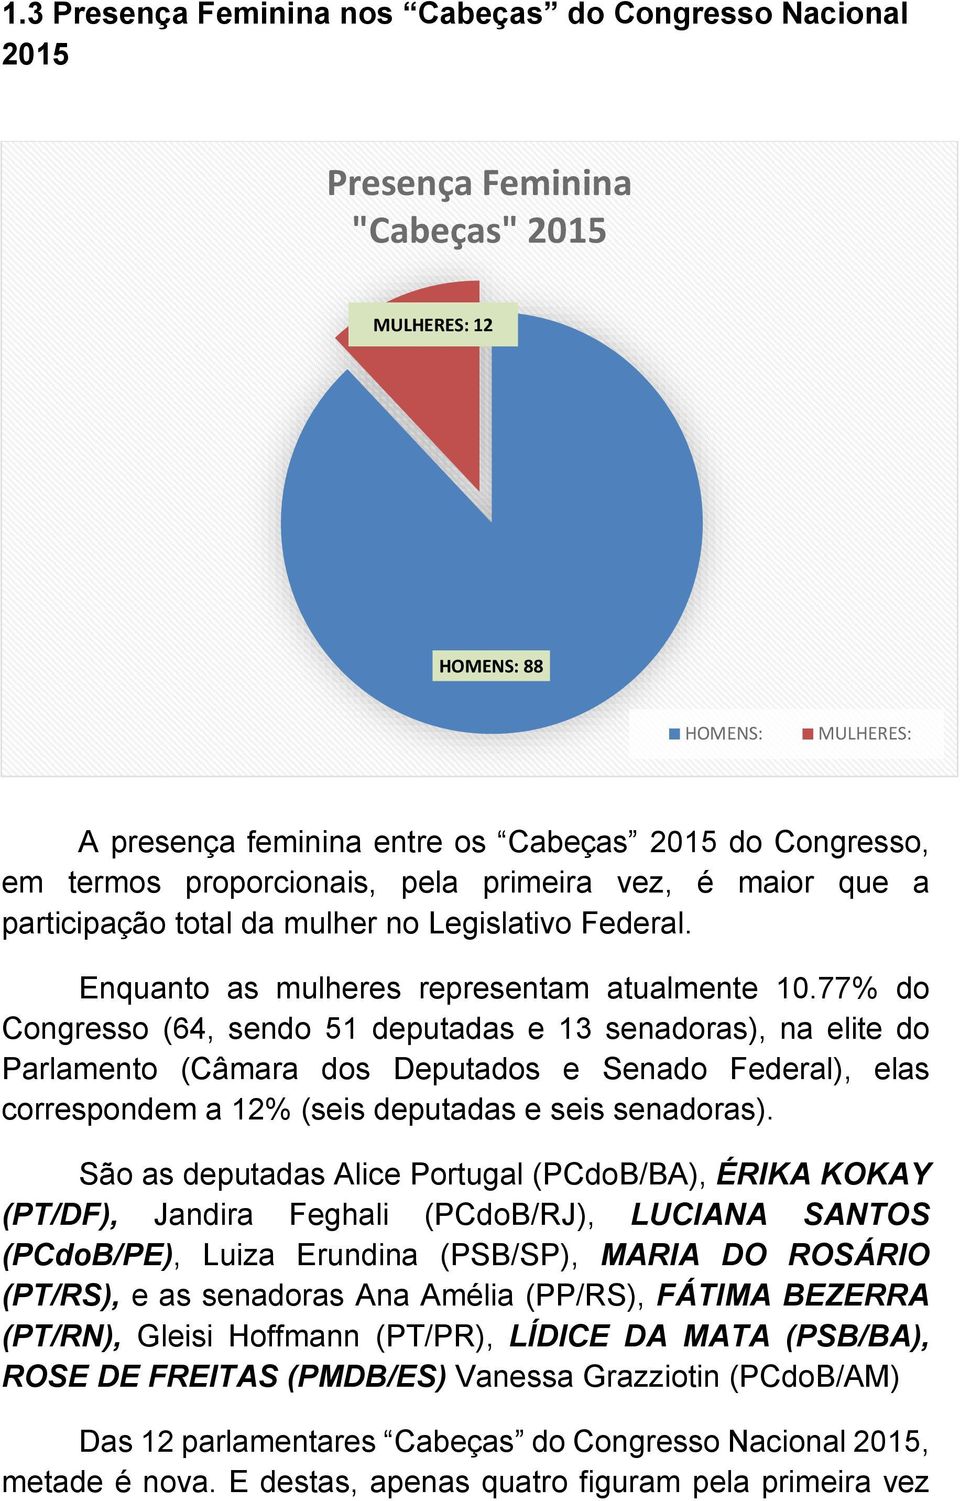 77% do Congresso (64, sendo 51 deputadas e 13 senadoras), na elite do Parlamento (Câmara dos Deputados e Senado Federal), elas correspondem a 12% (seis deputadas e seis senadoras).